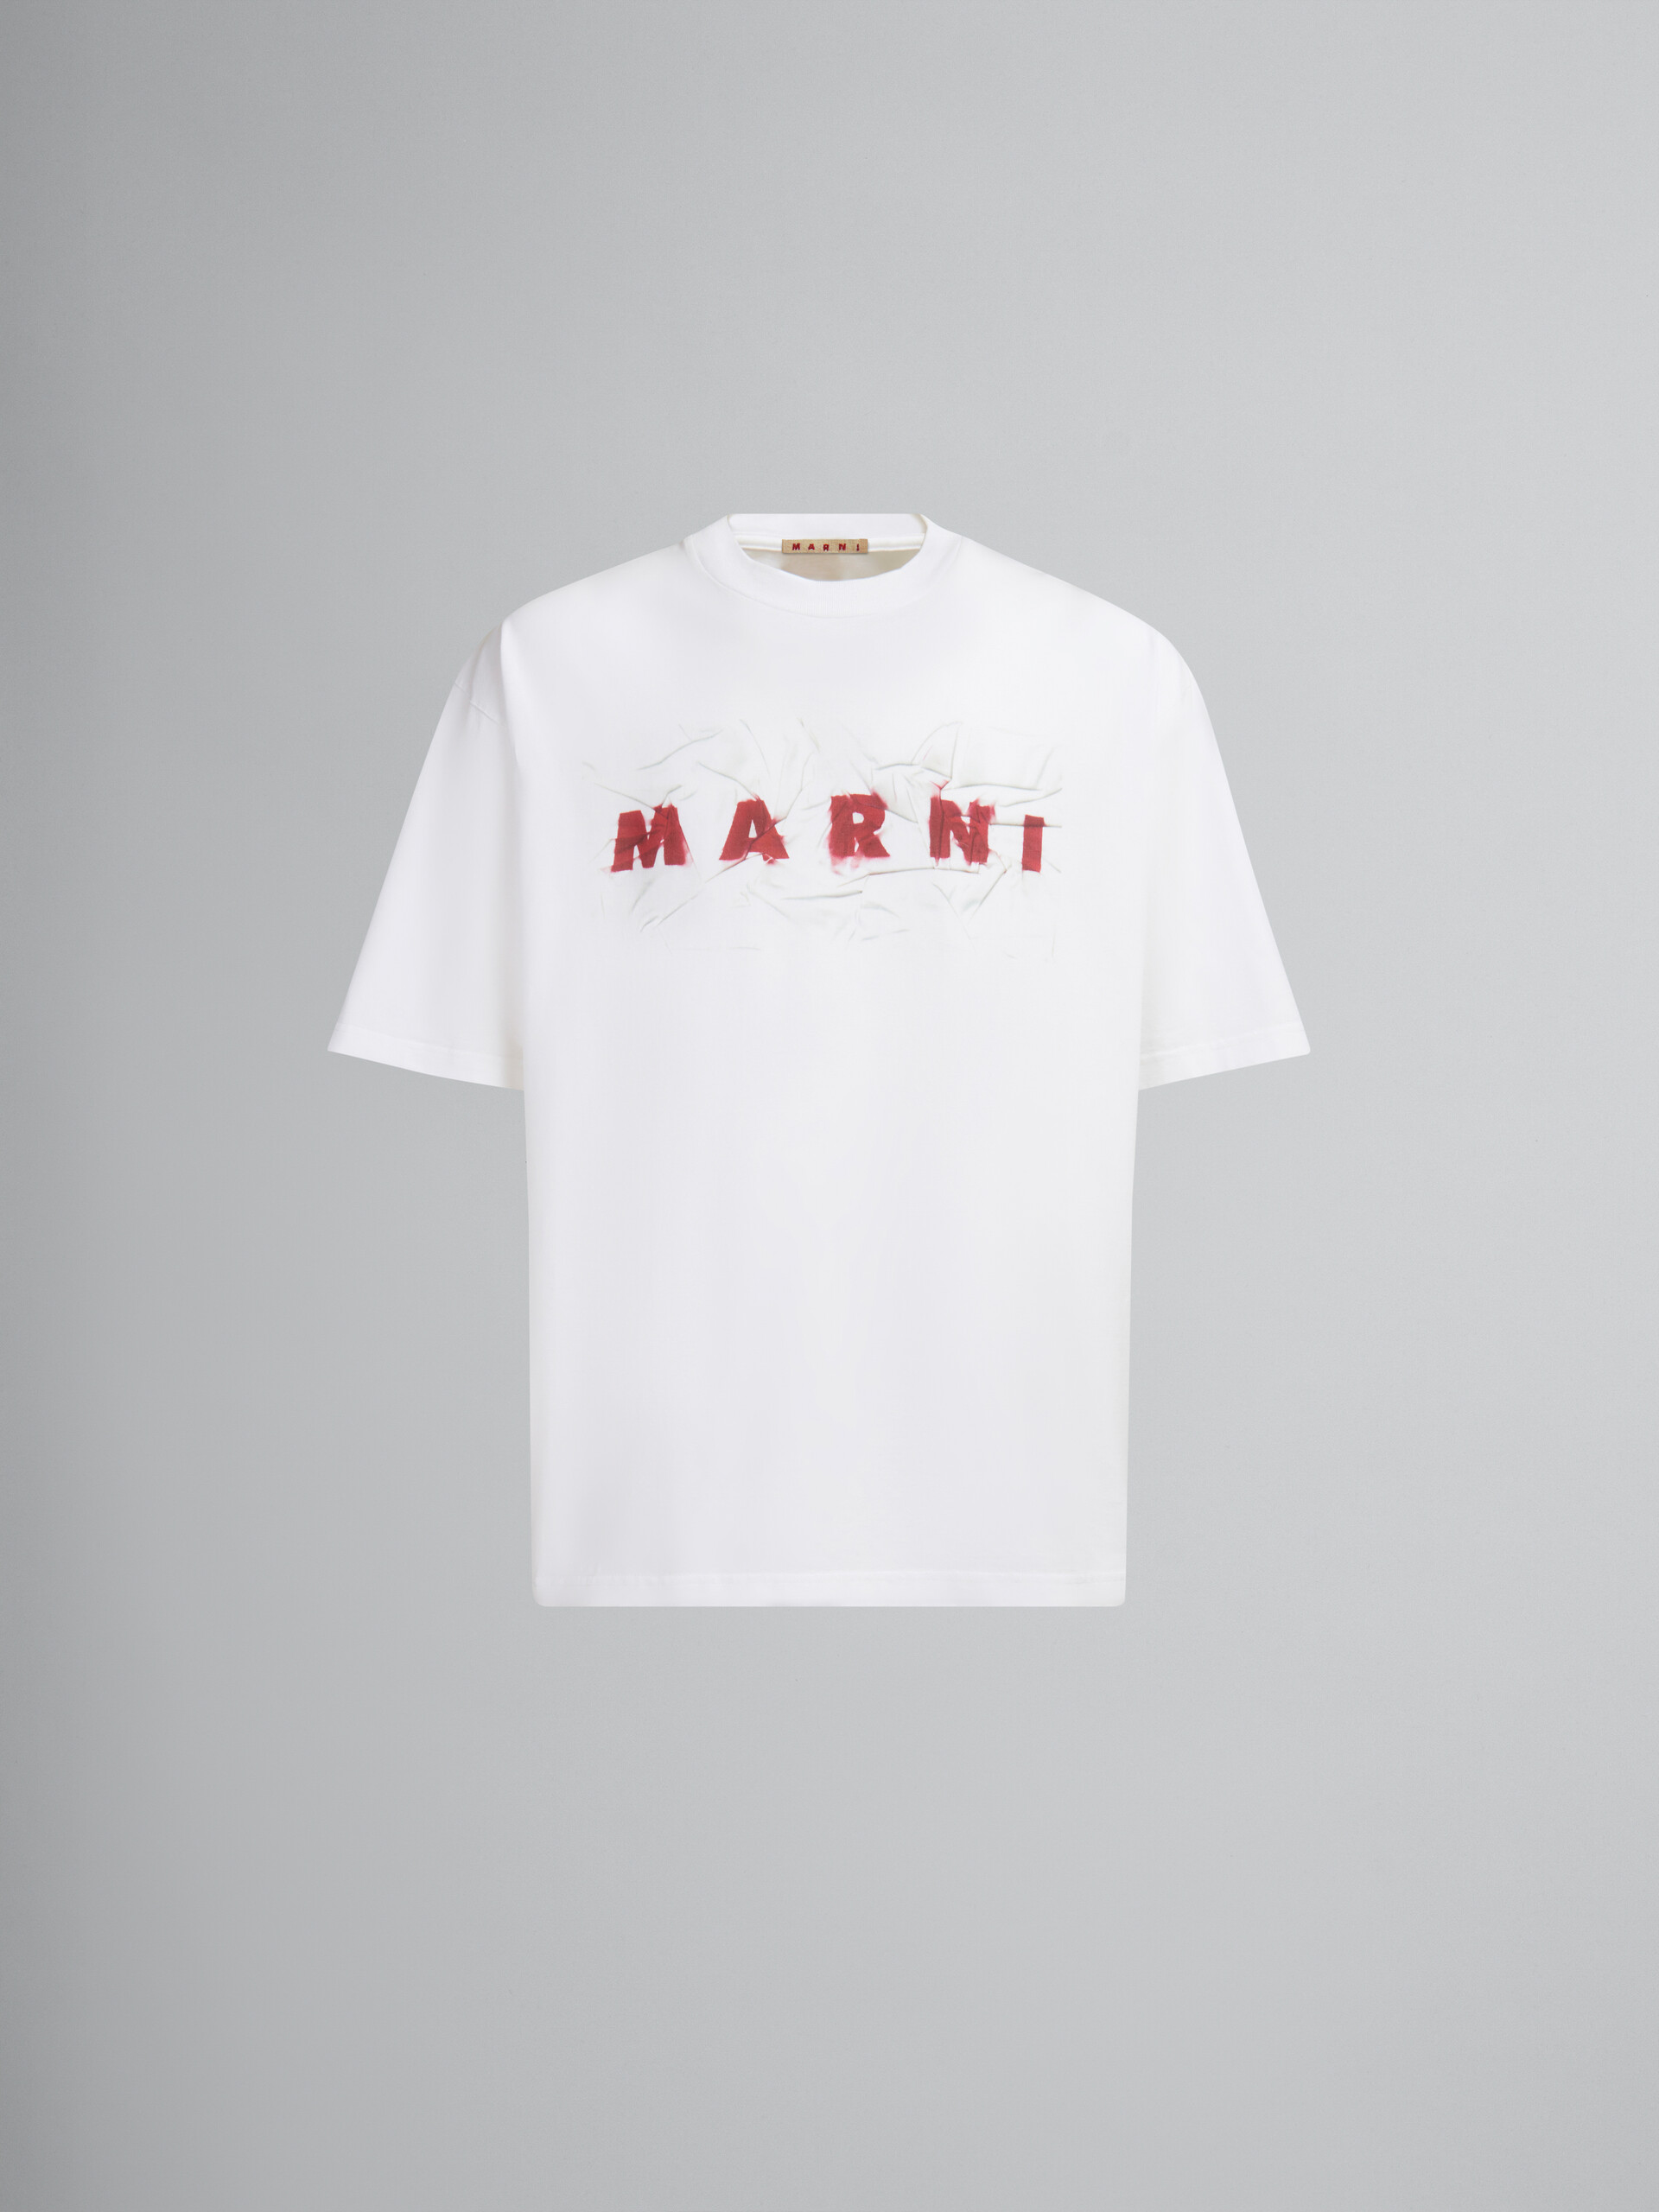 T-shirt in cotone biologico bianco con logo Marni stropicciato - T-shirt - Image 1